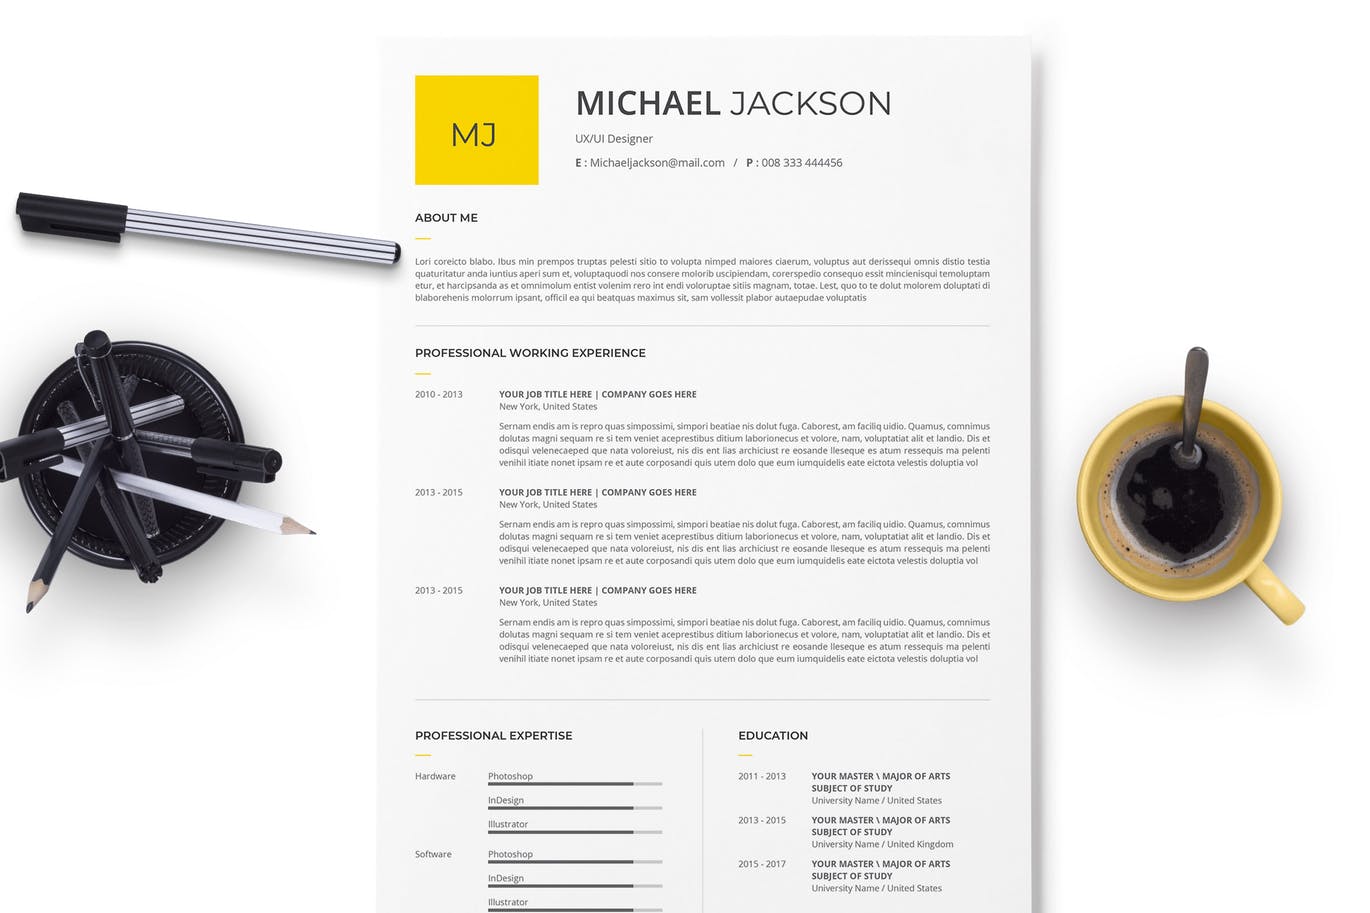 极简设计风格个人电子简历&介绍信设计模板 Minimal Resume And Cover Letter With Yellow Acsen插图